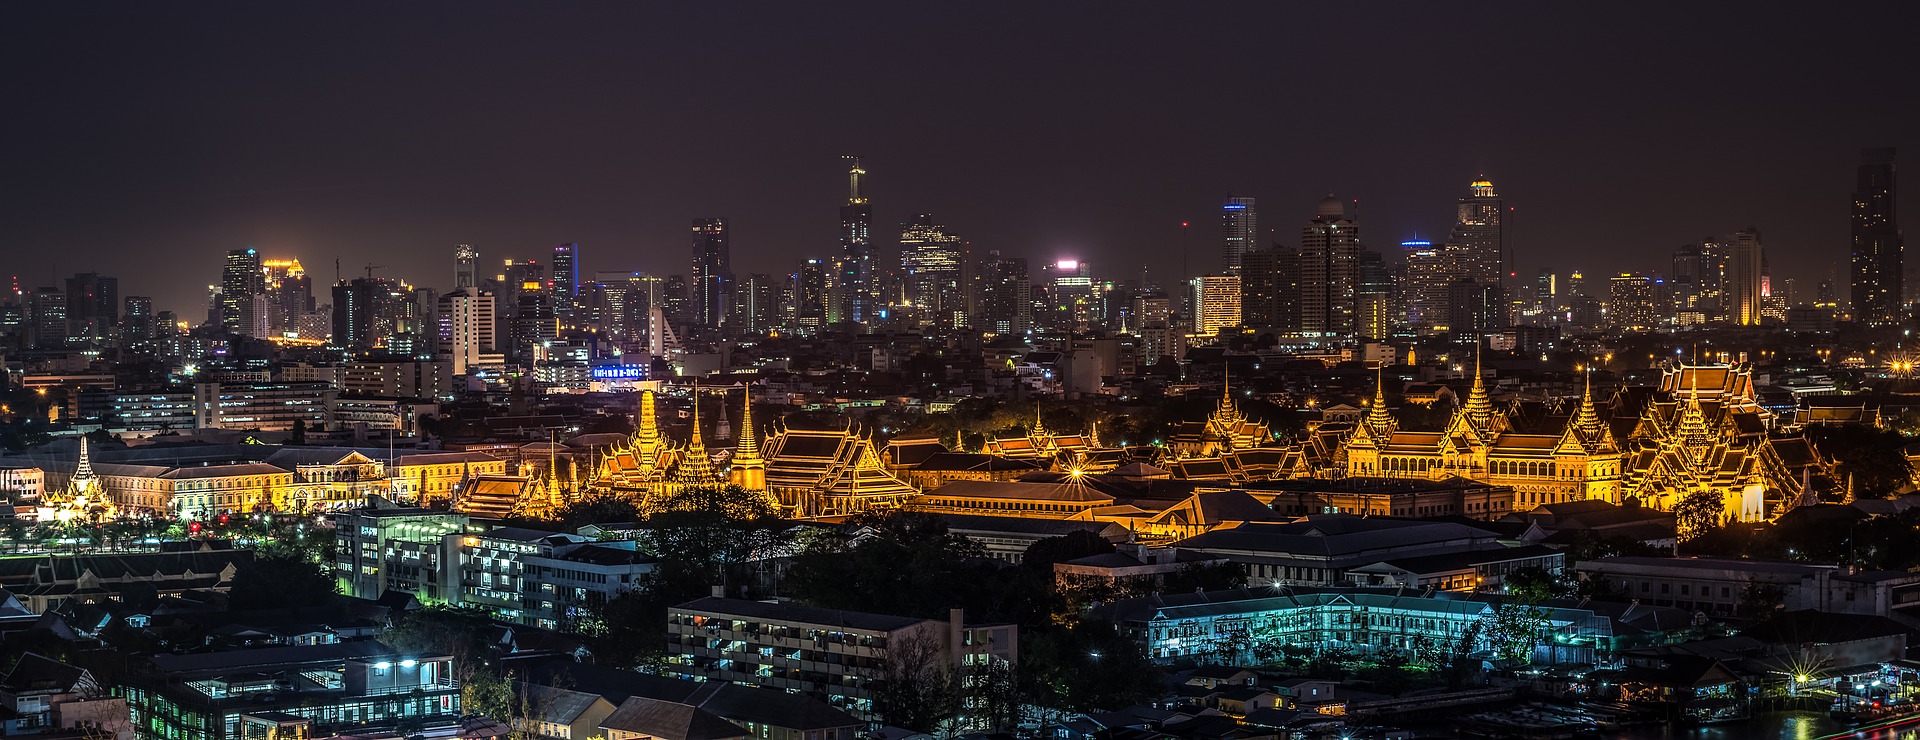 IURC Thailand: Bangkok Grand Palace